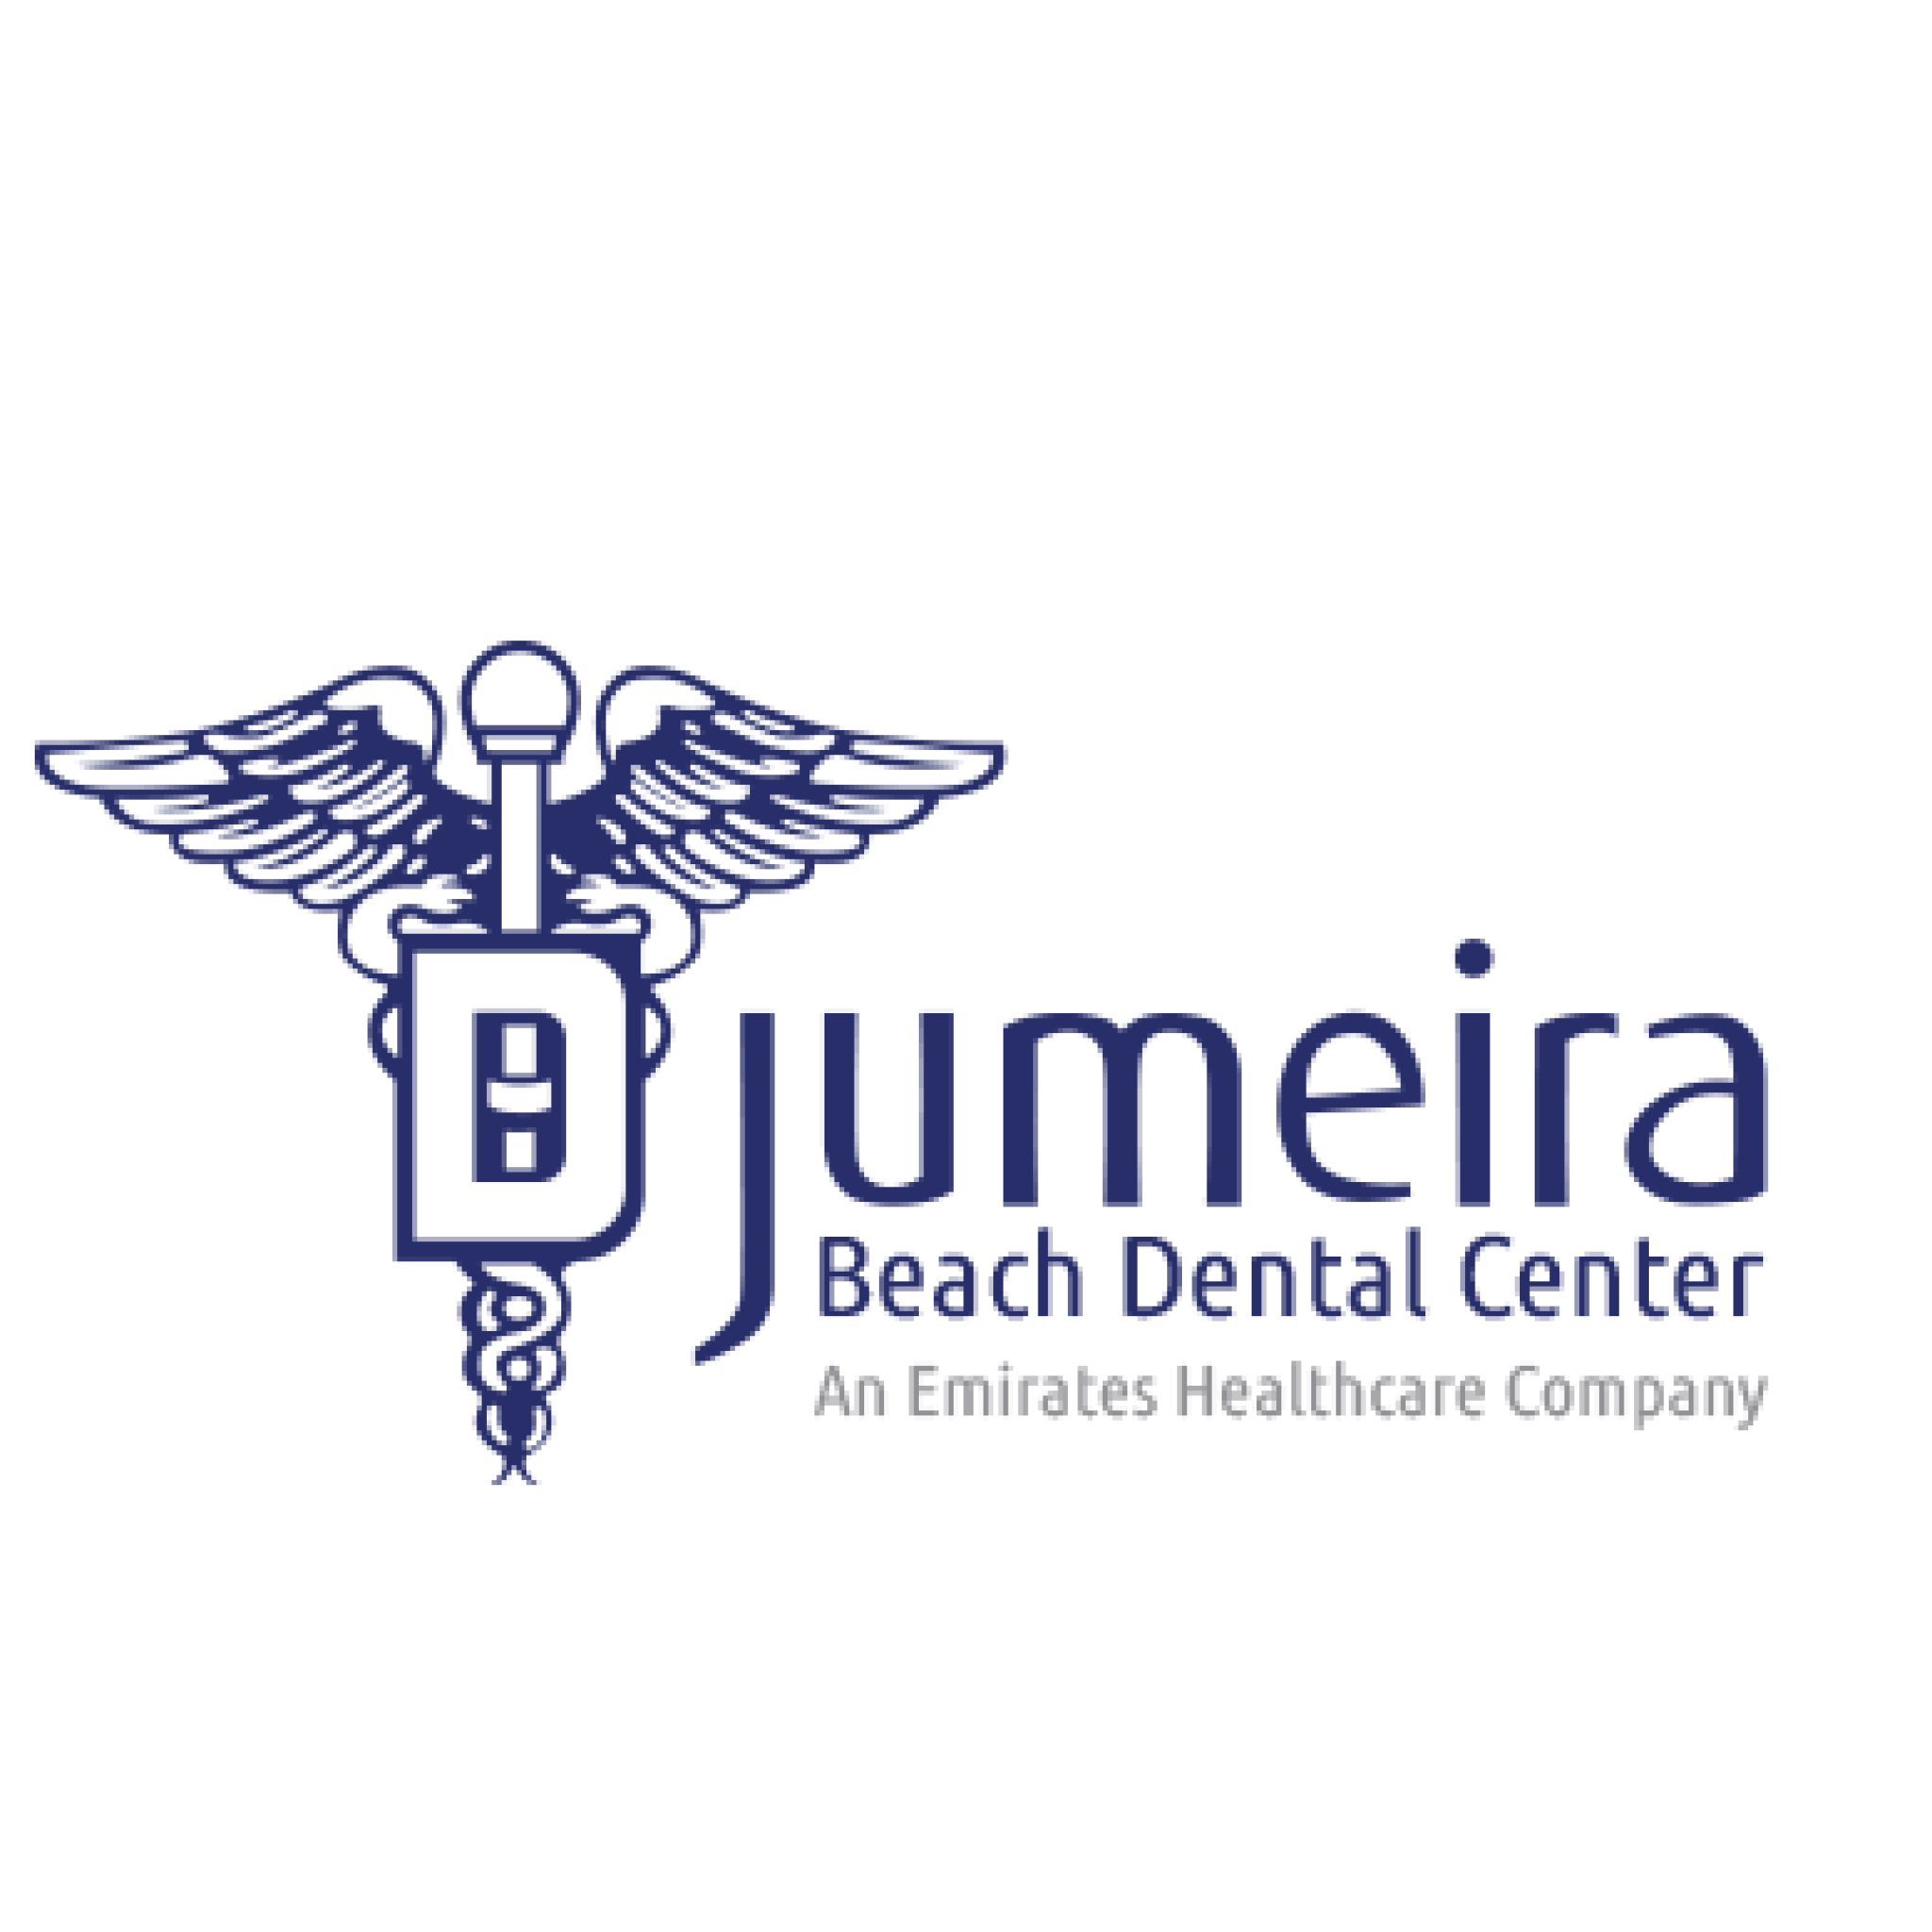 Jumeira Beach Dental Center